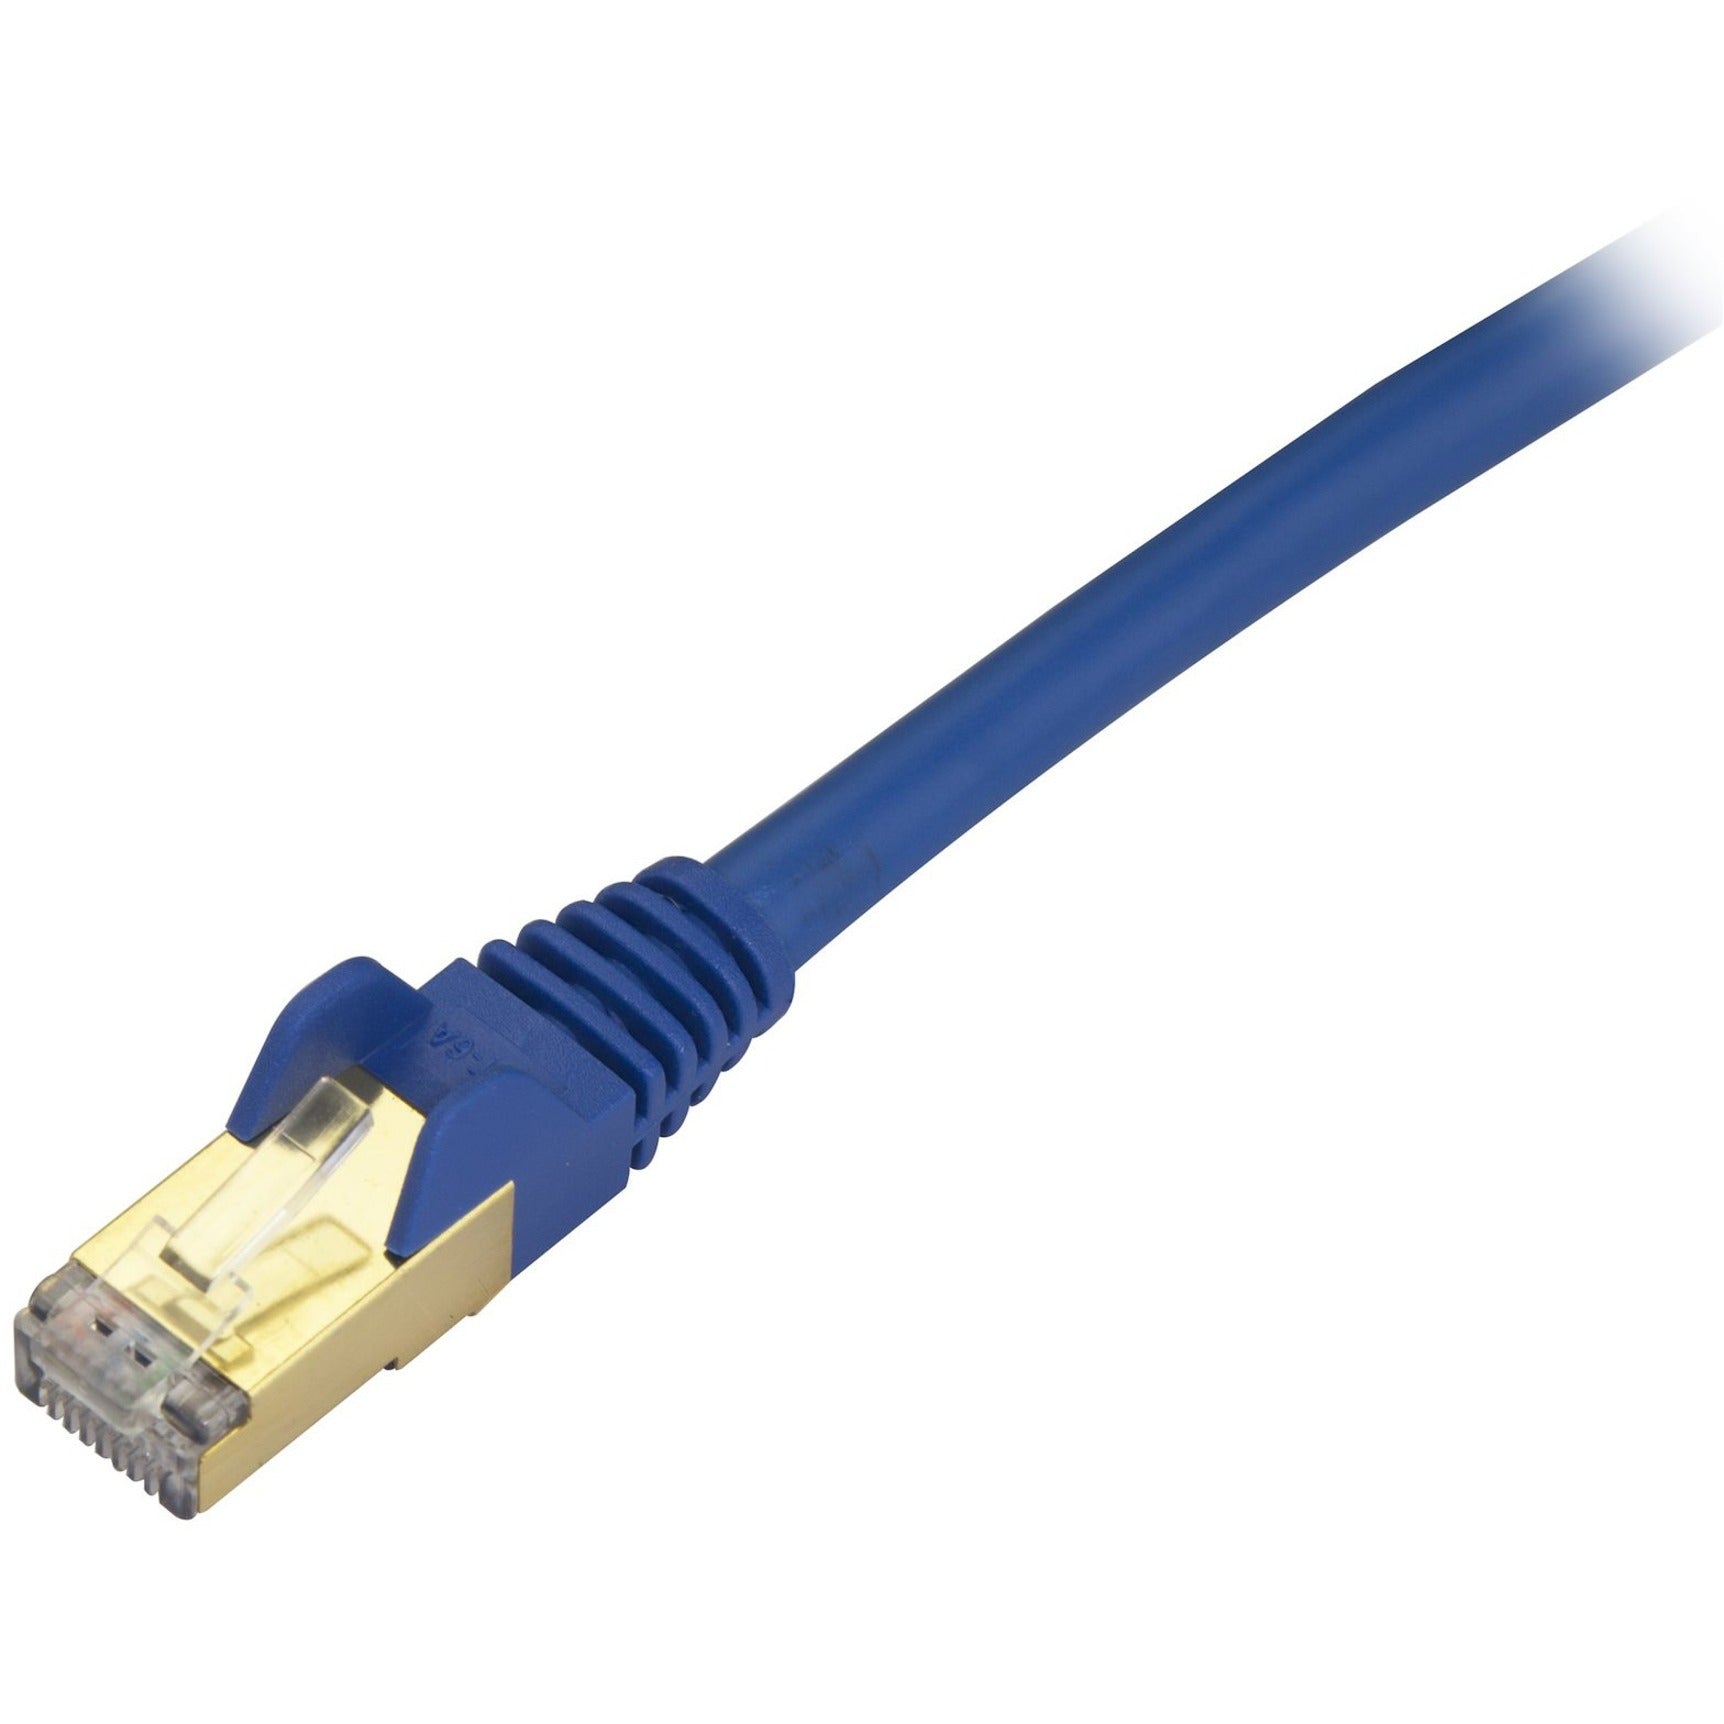 StarTech.com C6ASPAT30BL Cat6a Ethernet Patch Cable - Shielded (STP) - 30 ft., Blue, Long Ethernet Cord